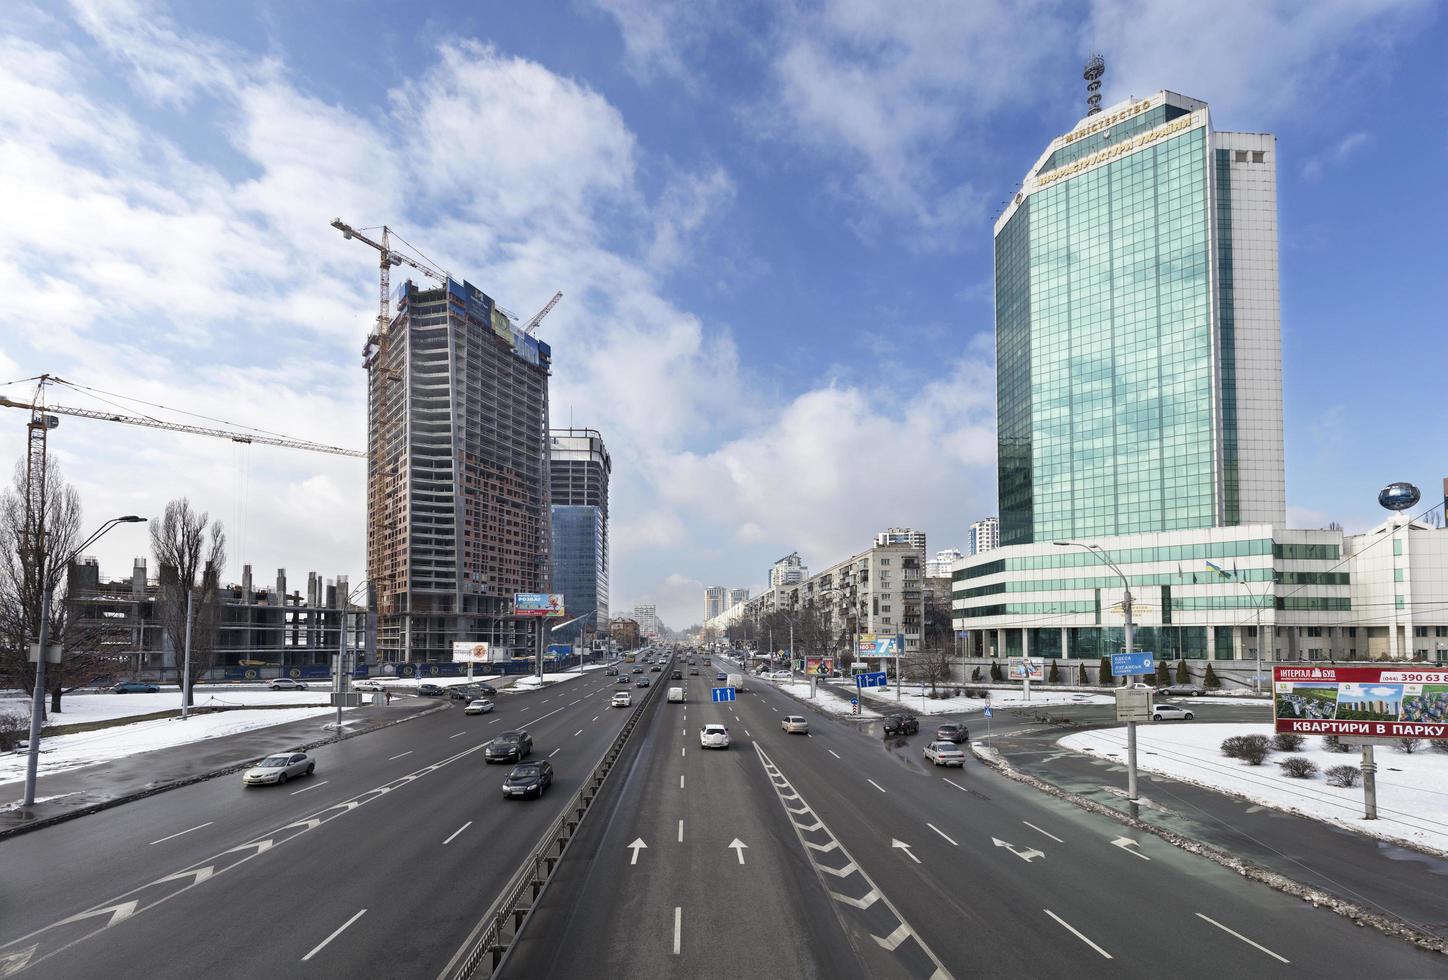 Ver el tráfico de overcity en peremogi prospect en kyiv foto